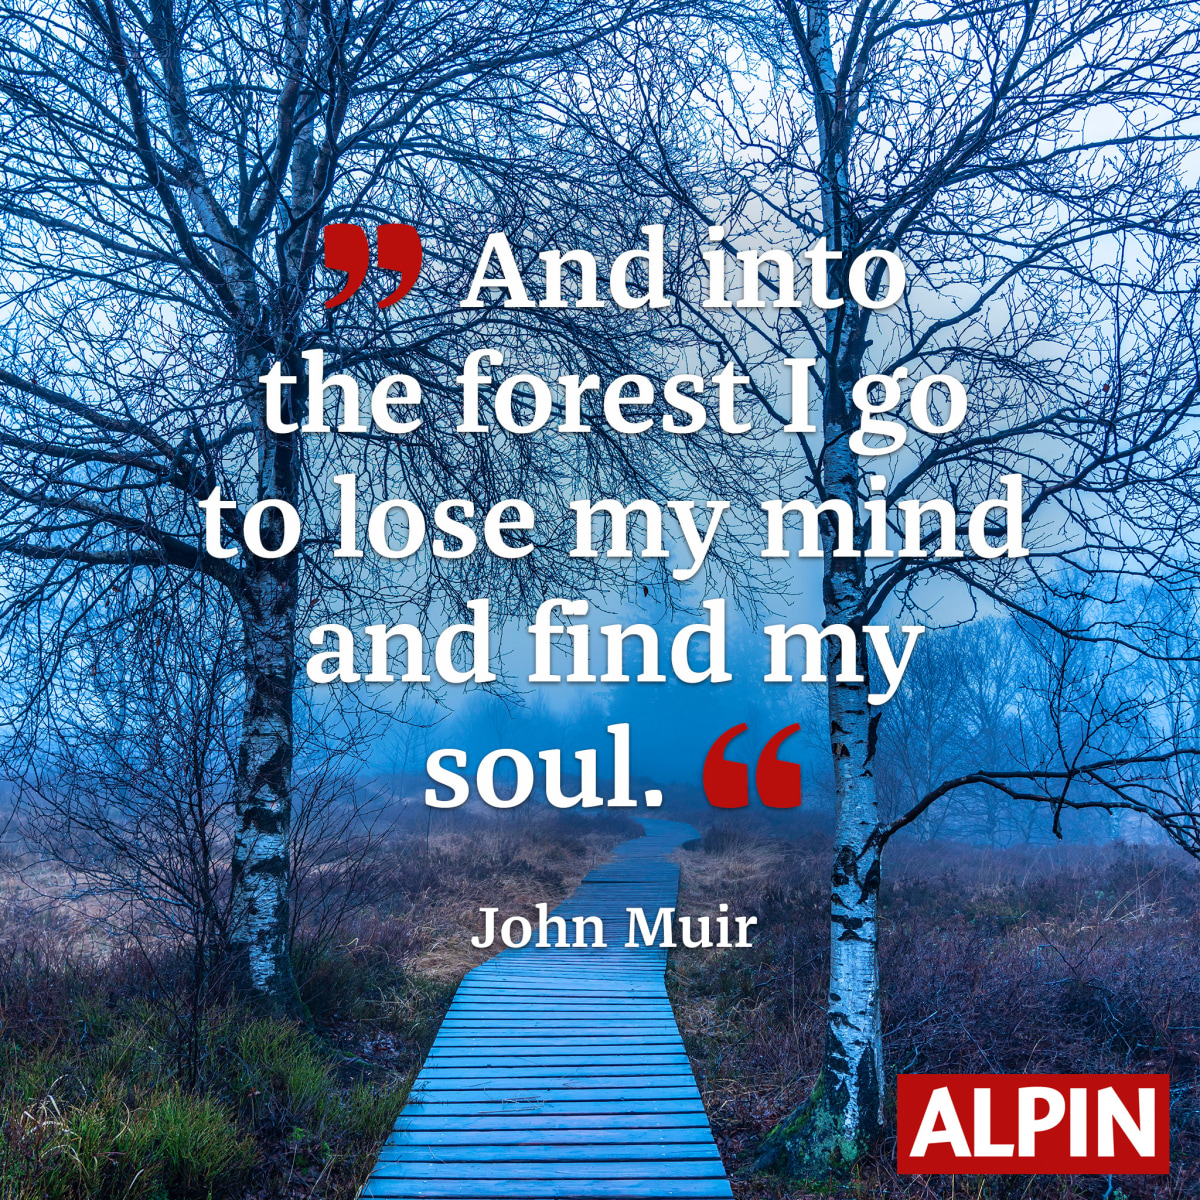 Zitat von John Muir